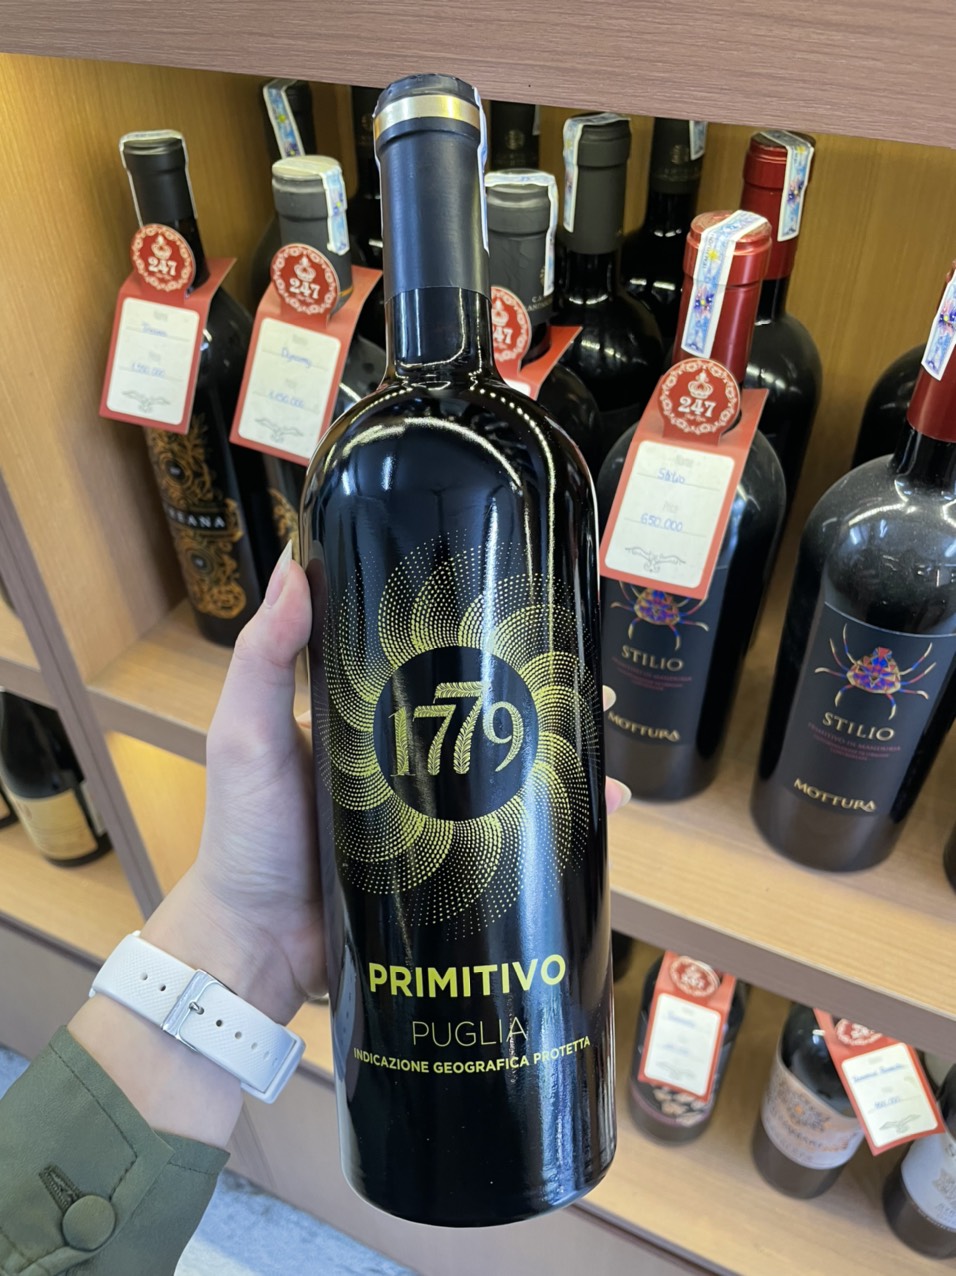 Rượu Vang Ý 1779 Primitivo San Marco có thể dùng kết hợp với thịt quay, thịt hầm, phô mai, thịt thú săn, hay các loại thịt đỏ khác